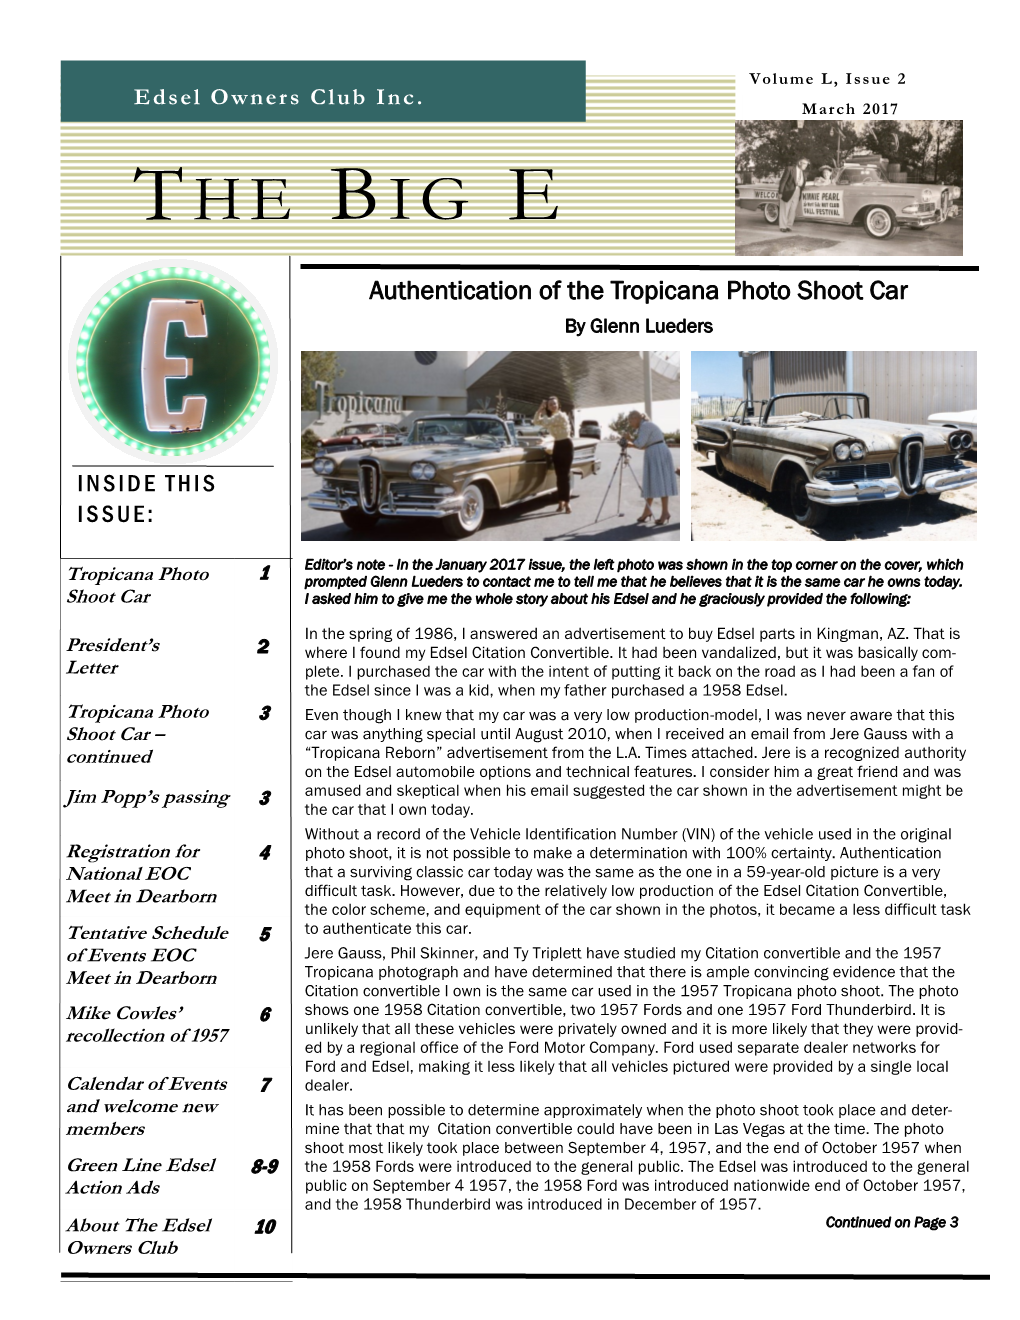 The Big E Page 2